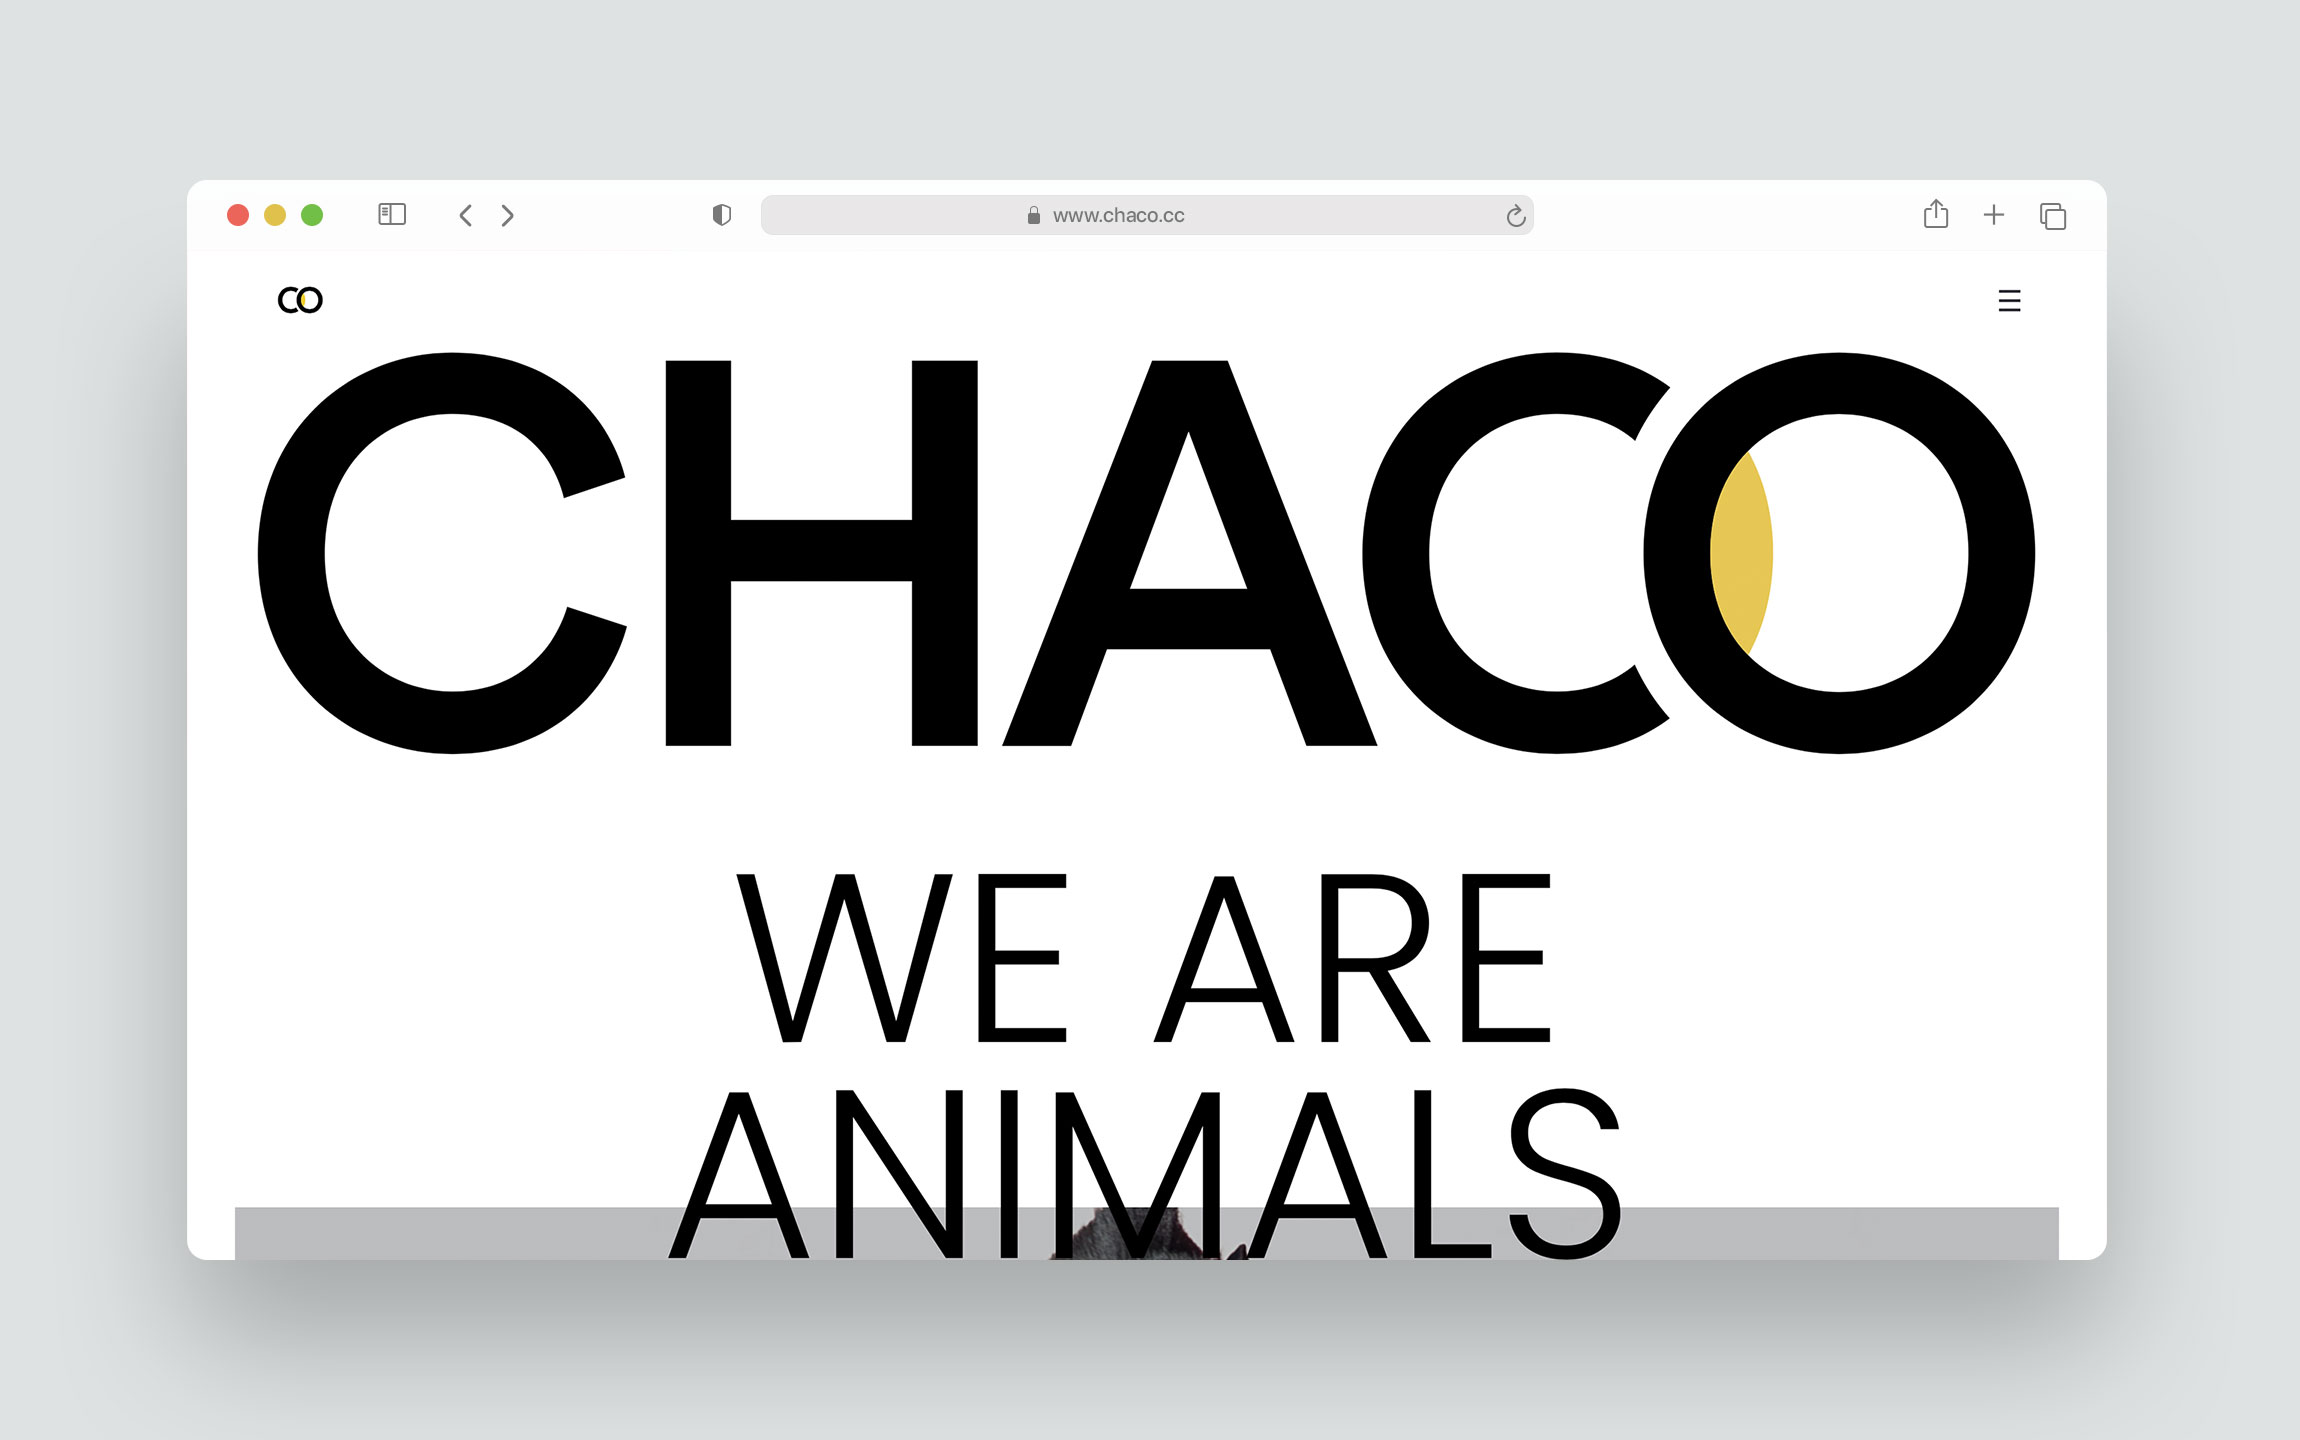 UX for CHACO by Palacios Bros Studio